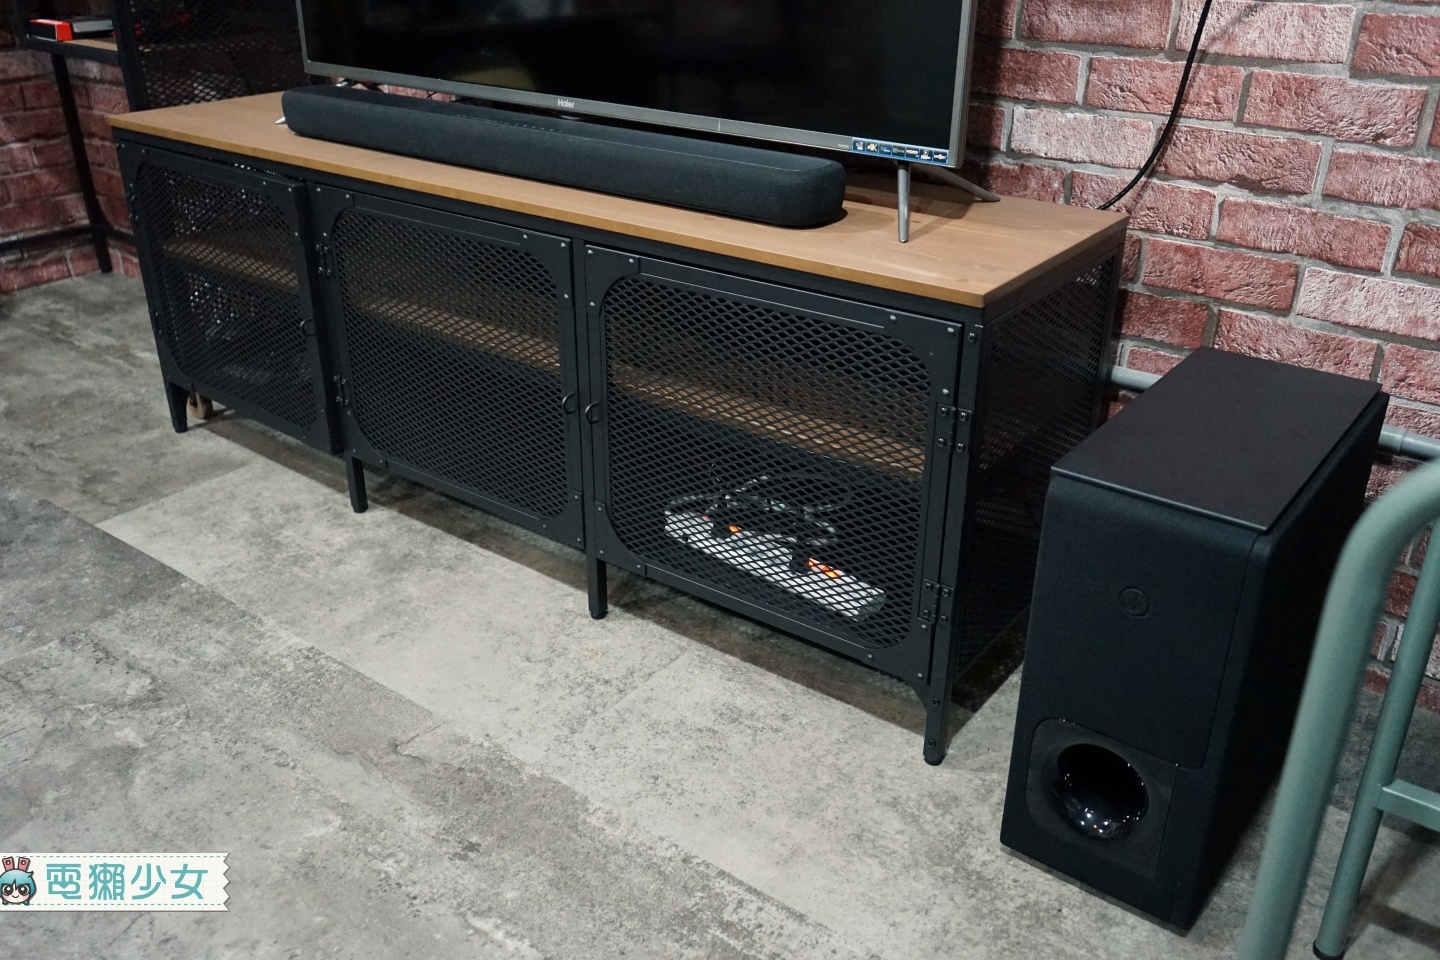 開箱｜『 Yamaha YAS-209 』Soundbar 和低音喇叭組合 輕鬆打造家中環繞音效！接電視連藍牙都 OK